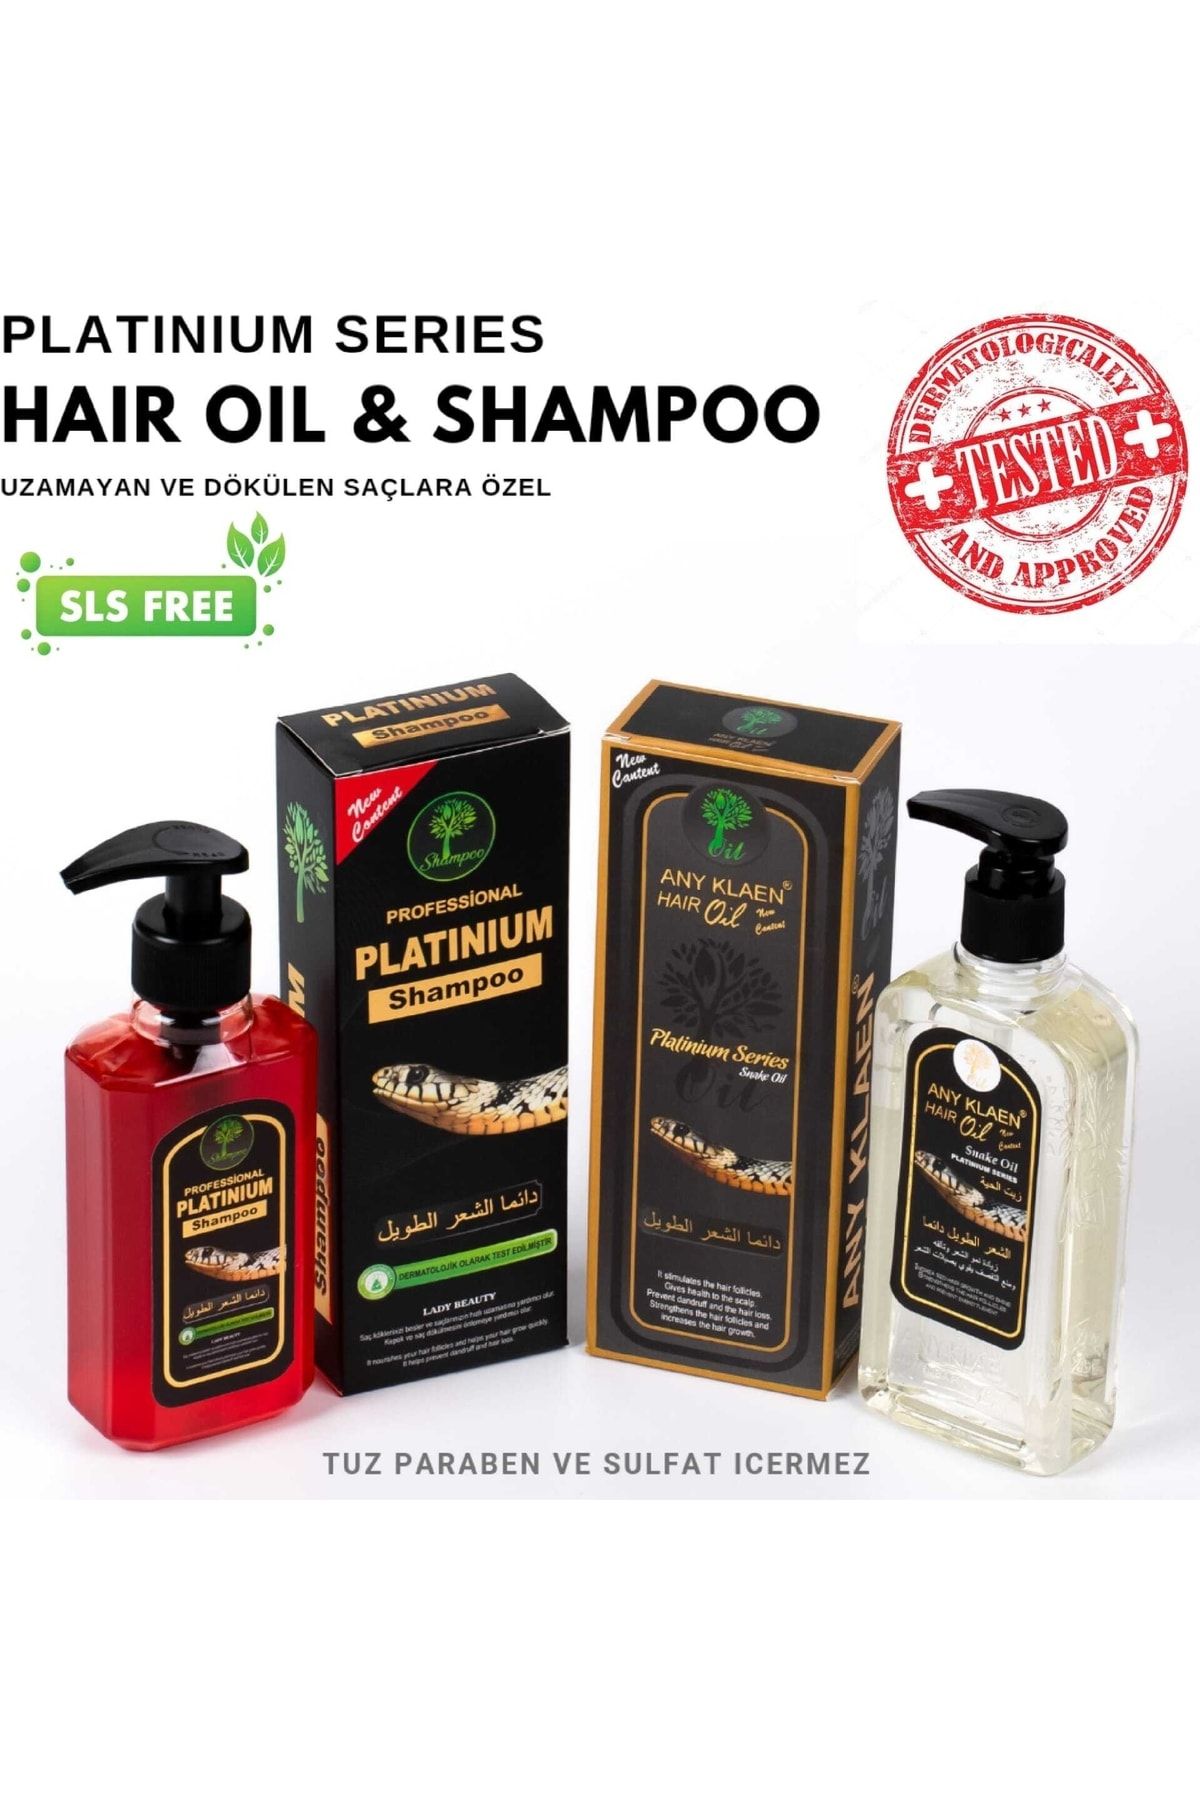 Any Klaen Saç Bakım Yağı & Saç Bakım Şampuanı 2'li Set